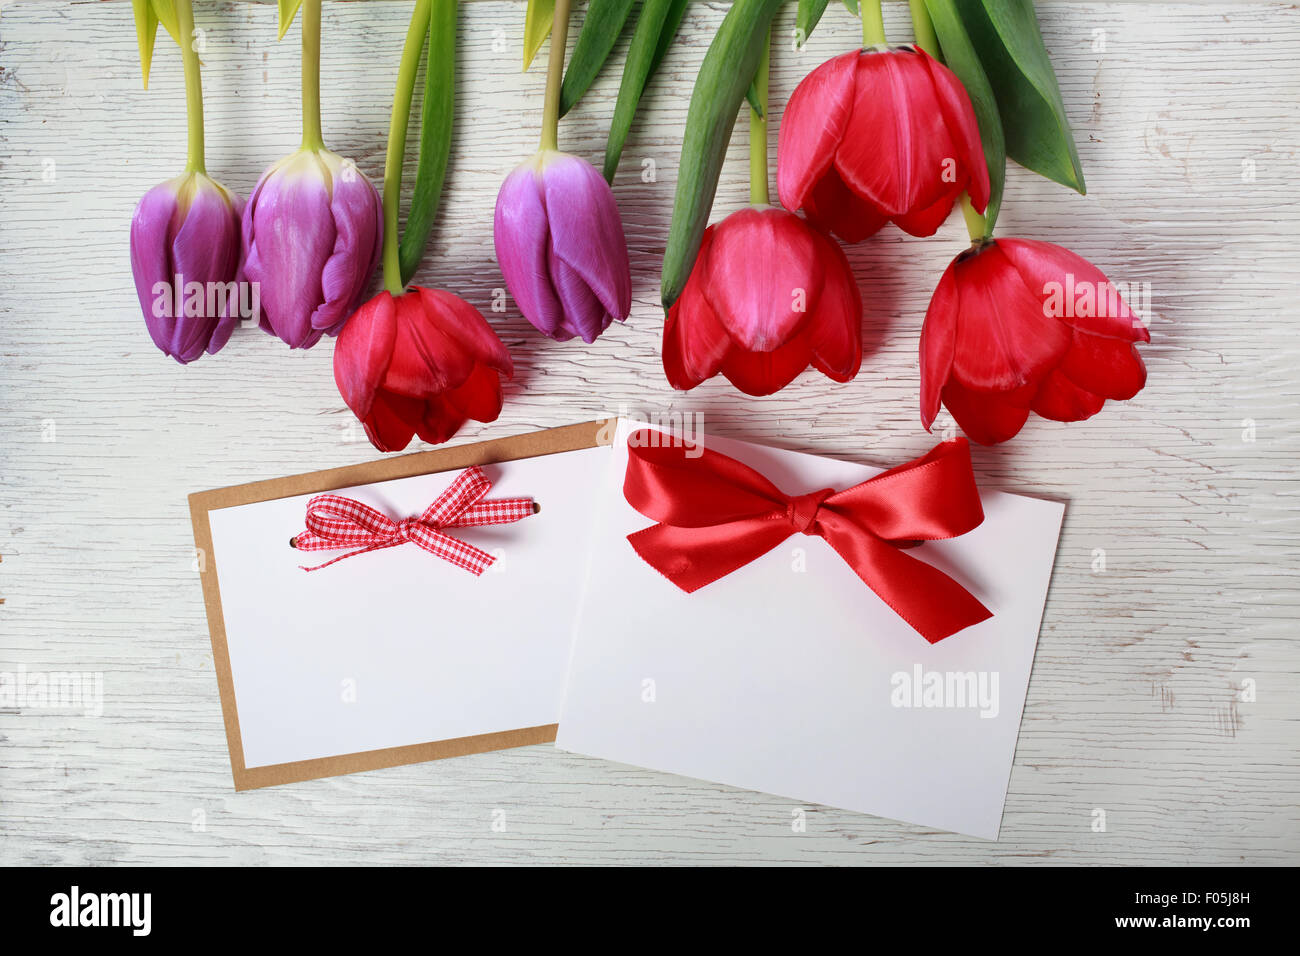 Rote und violette Tulpen mit Nachricht Karten Stockfoto